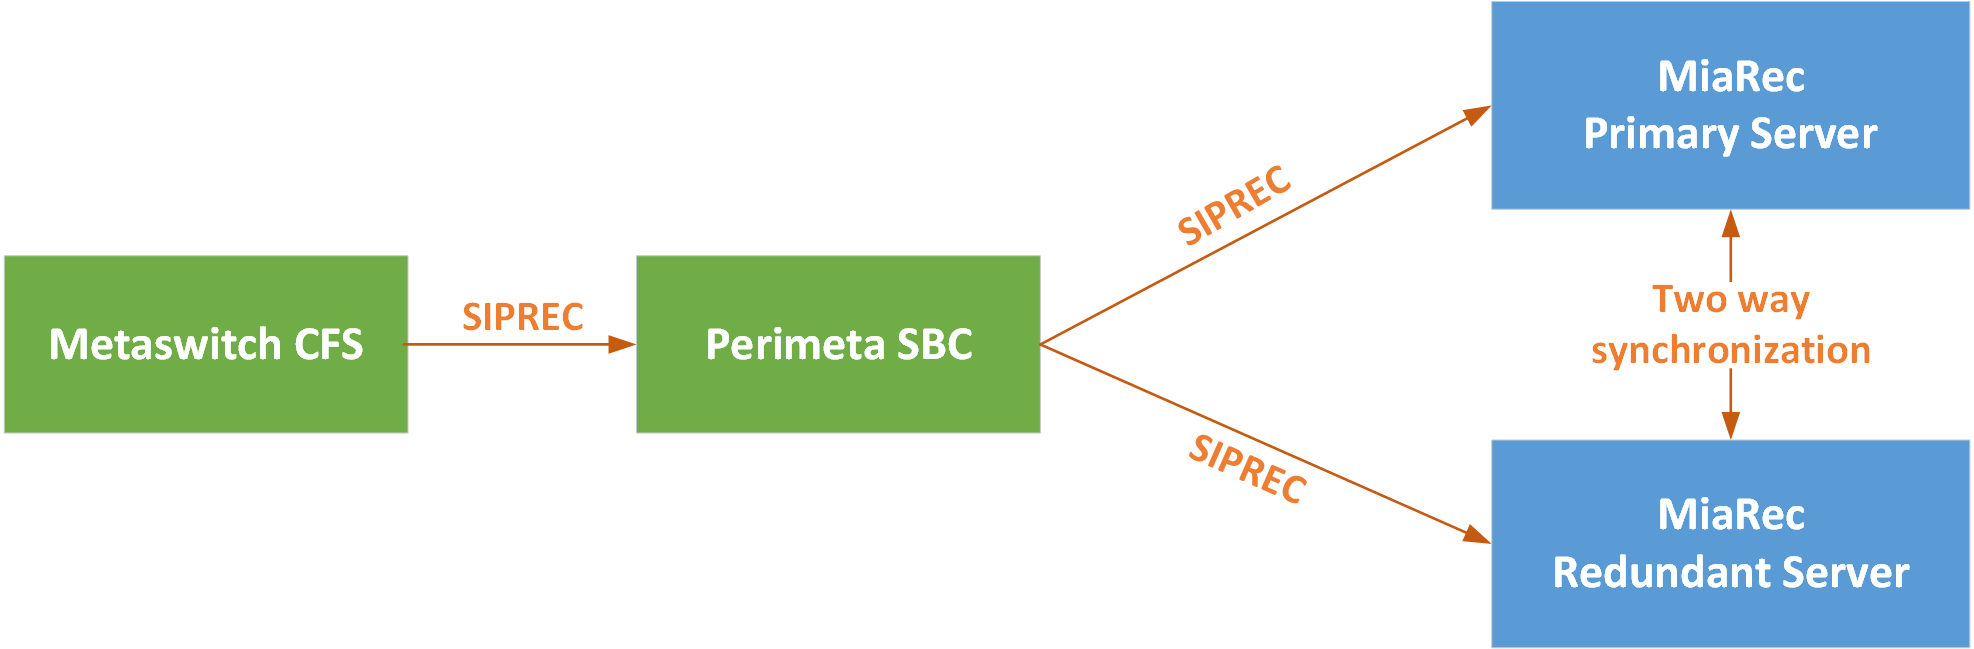 Perimeta SBC as a SIP Proxy between CFS and MiaRec recorder